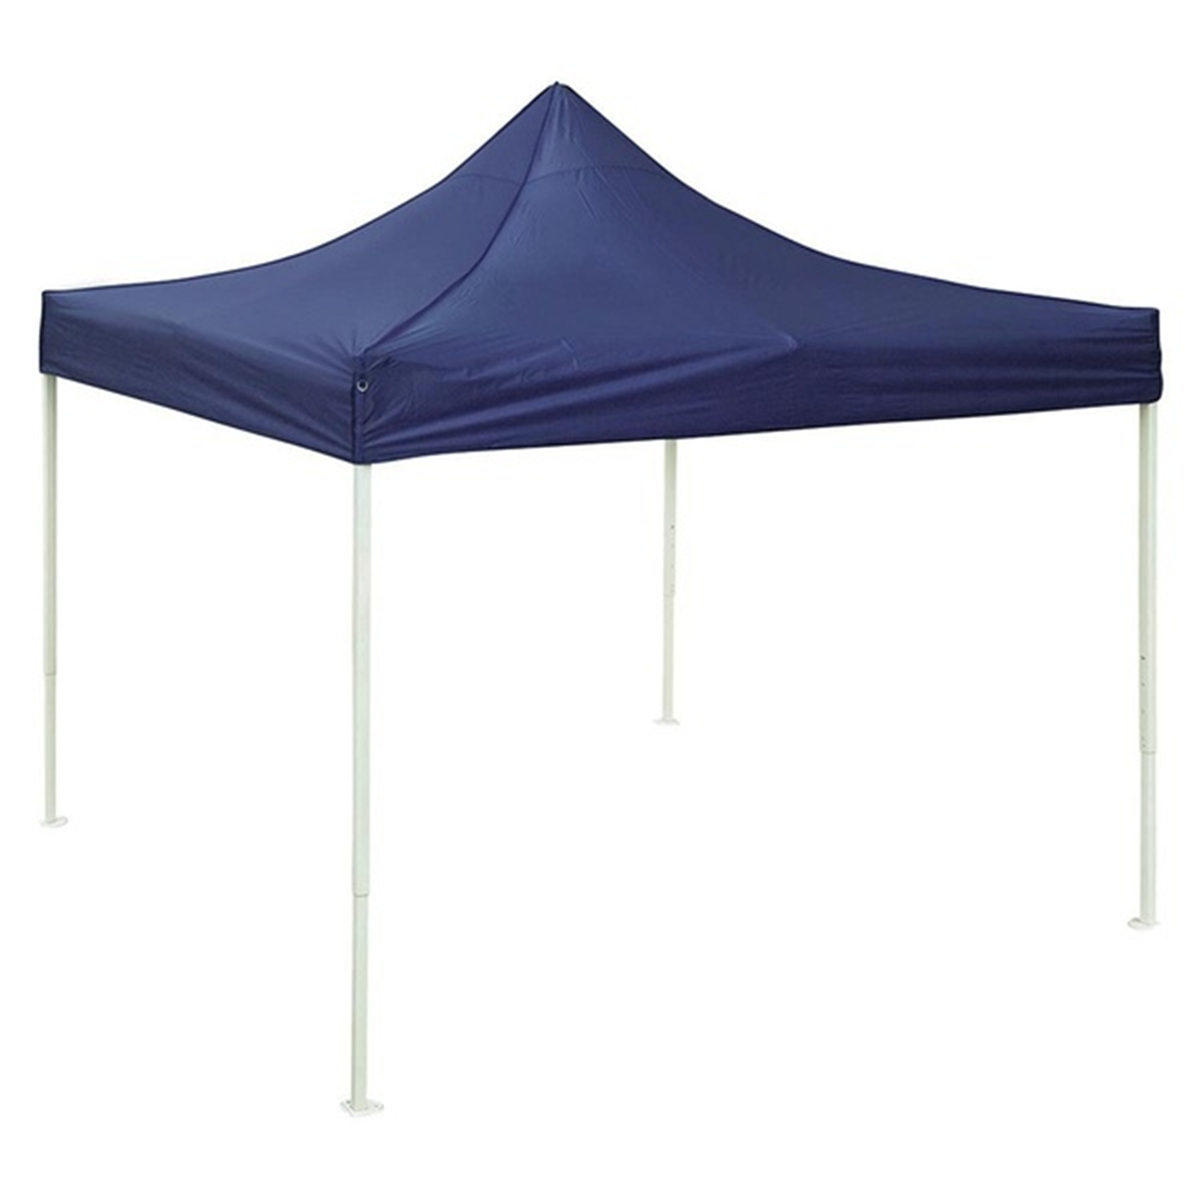 10x10ft 420D Waterdichte Oxford Doek Zonnescherm Outdoor Reizen Wandelen Camping Tent